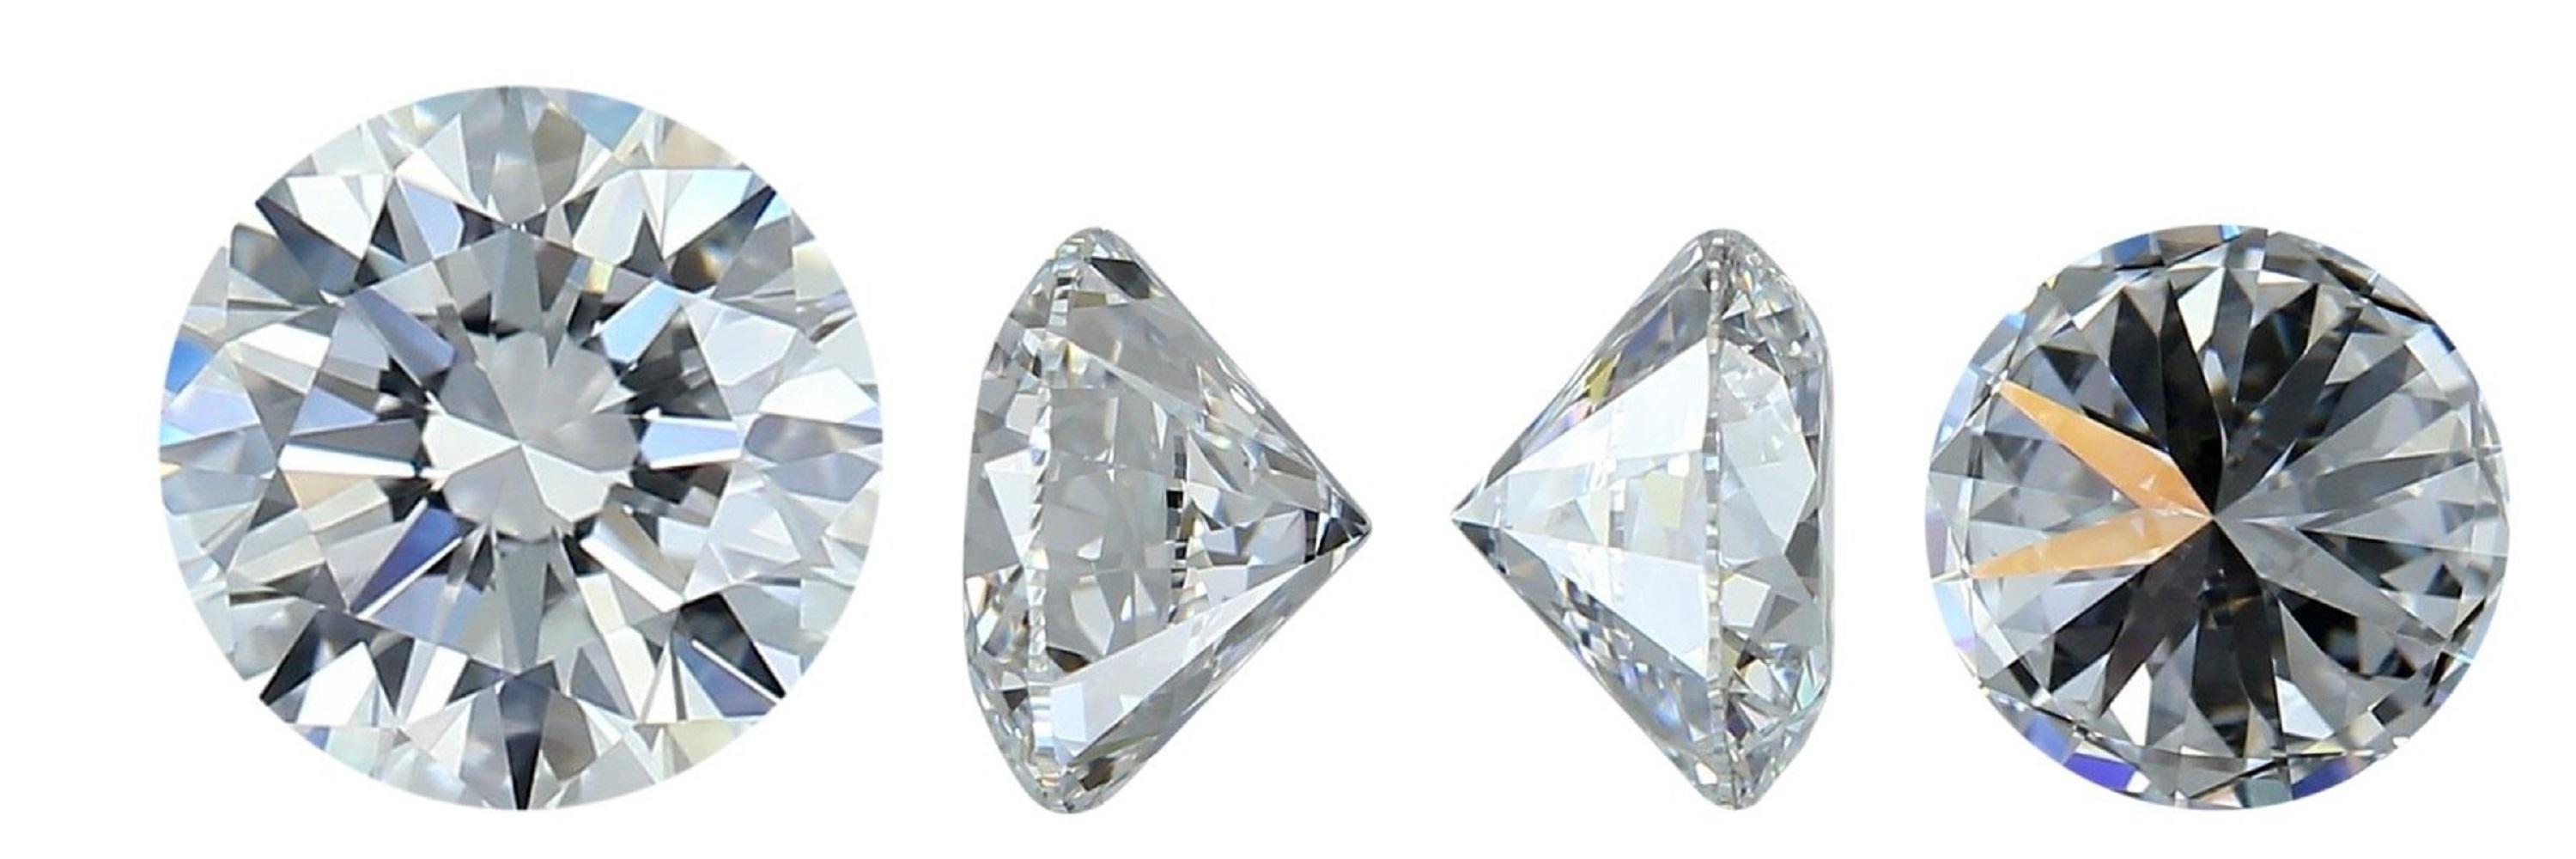 Sparking 1 Pc Natural Diamond 2.34 Ct Round E VVS2 IGI Certificate In New Condition For Sale In רמת גן, IL